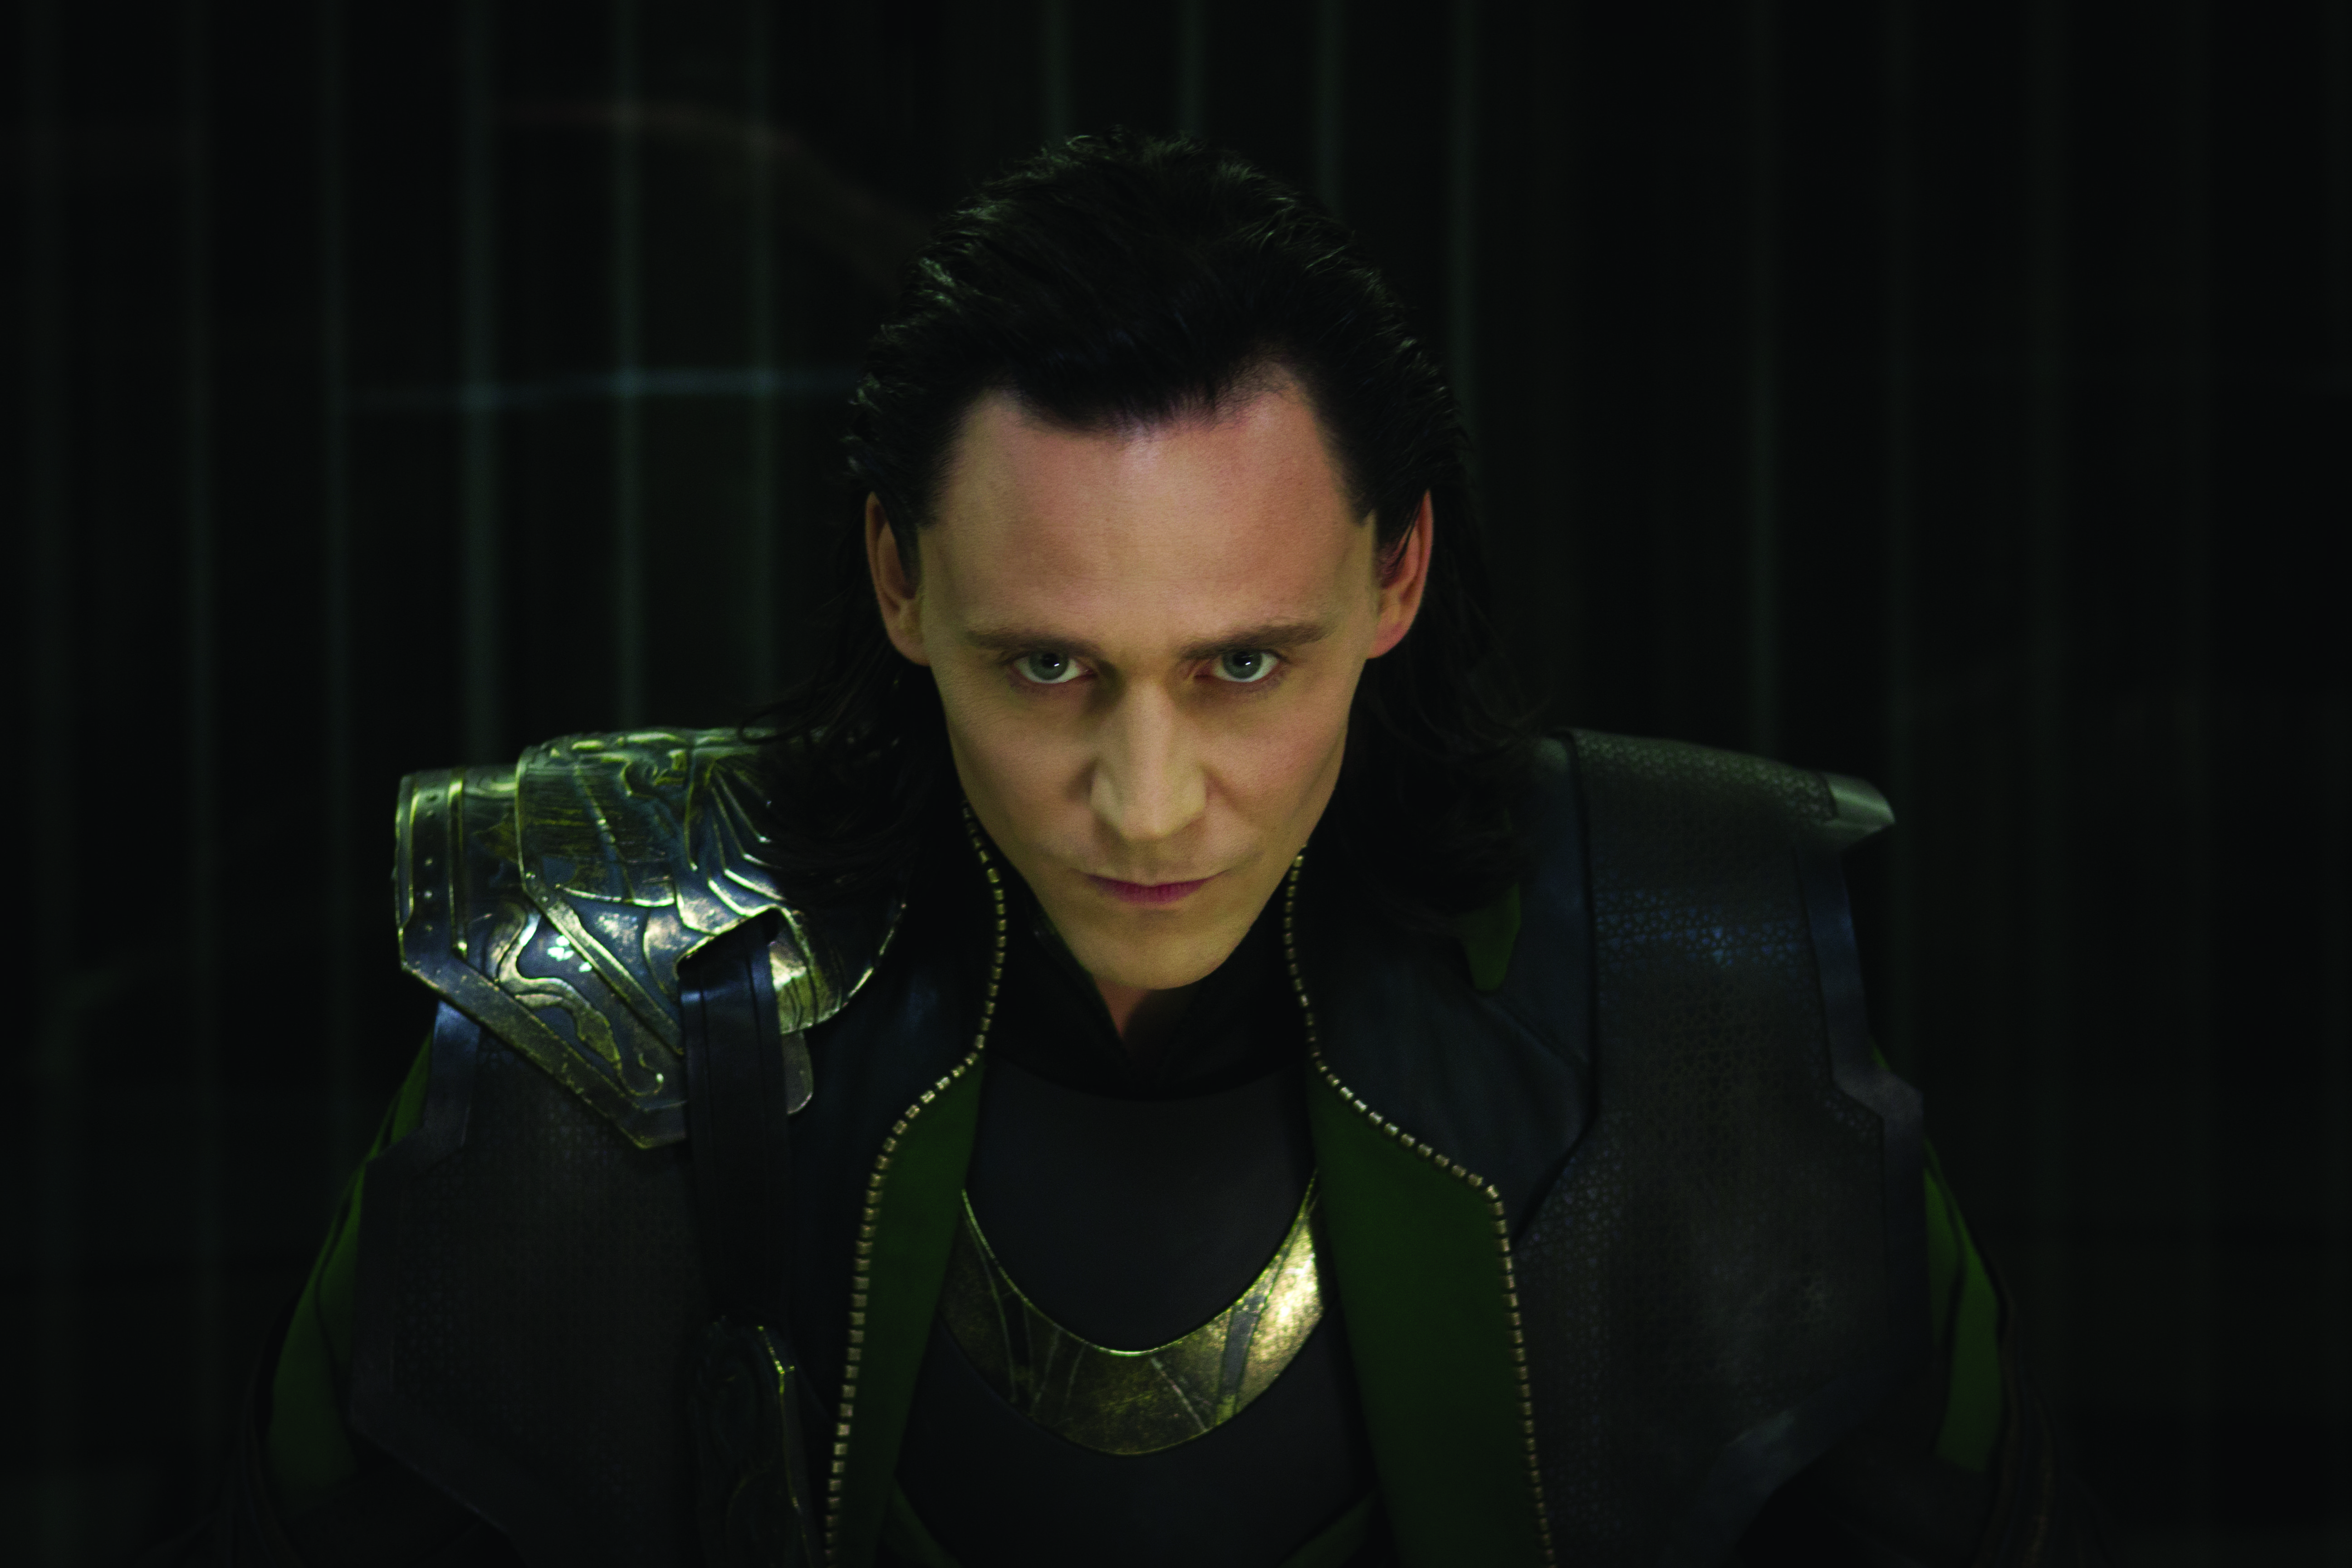 Oh Loki!